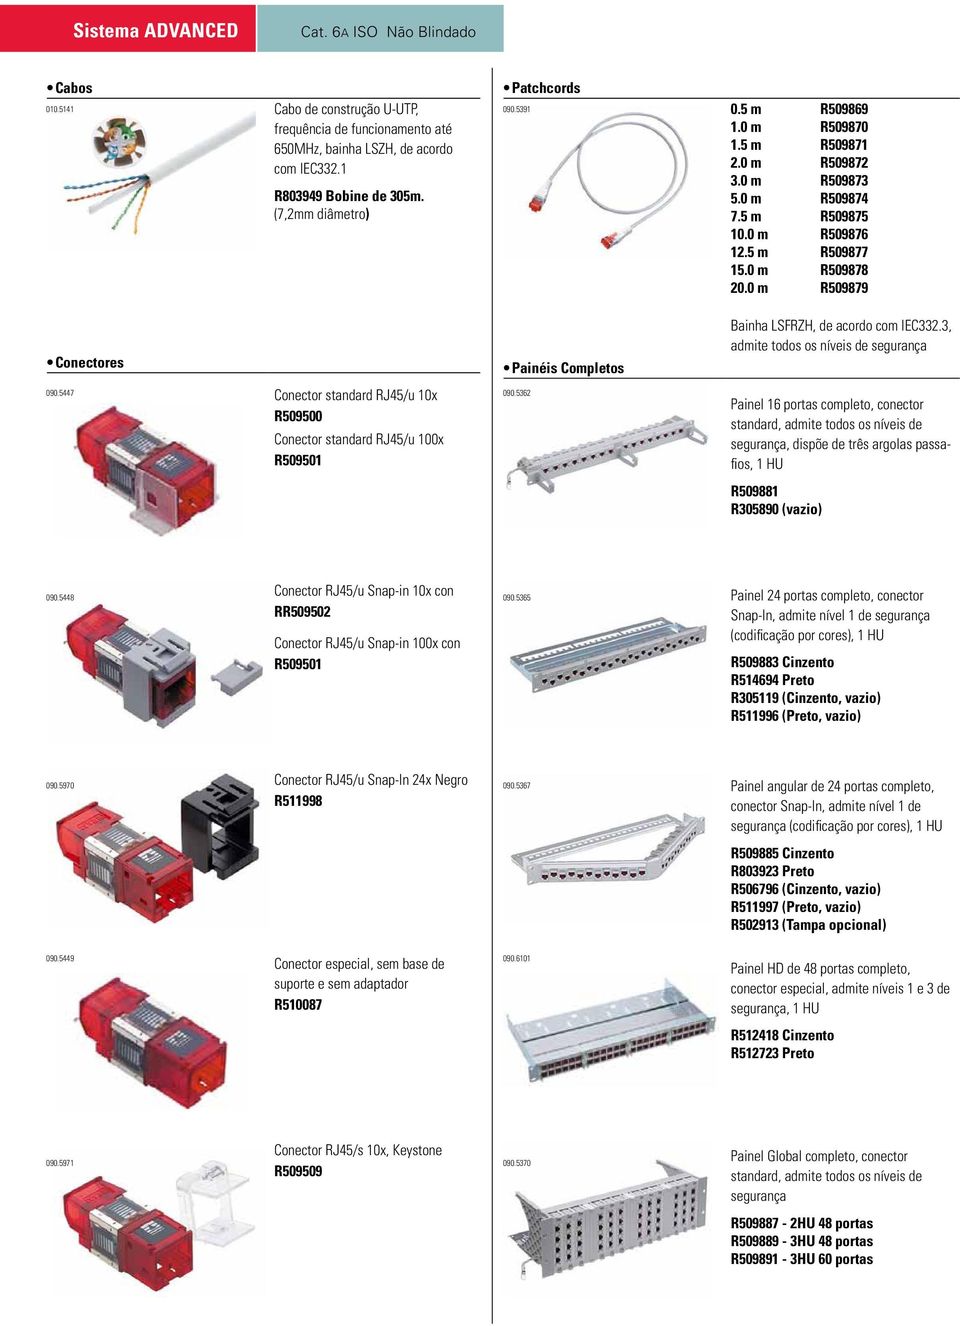 0 m R509879 Conectores Conector standard RJ45/u 10x R509500 Conector standard RJ45/u 100x R509501 090.5447 090.5362 Painéis Completos Bainha LSFRZH, de acordo com IEC332.